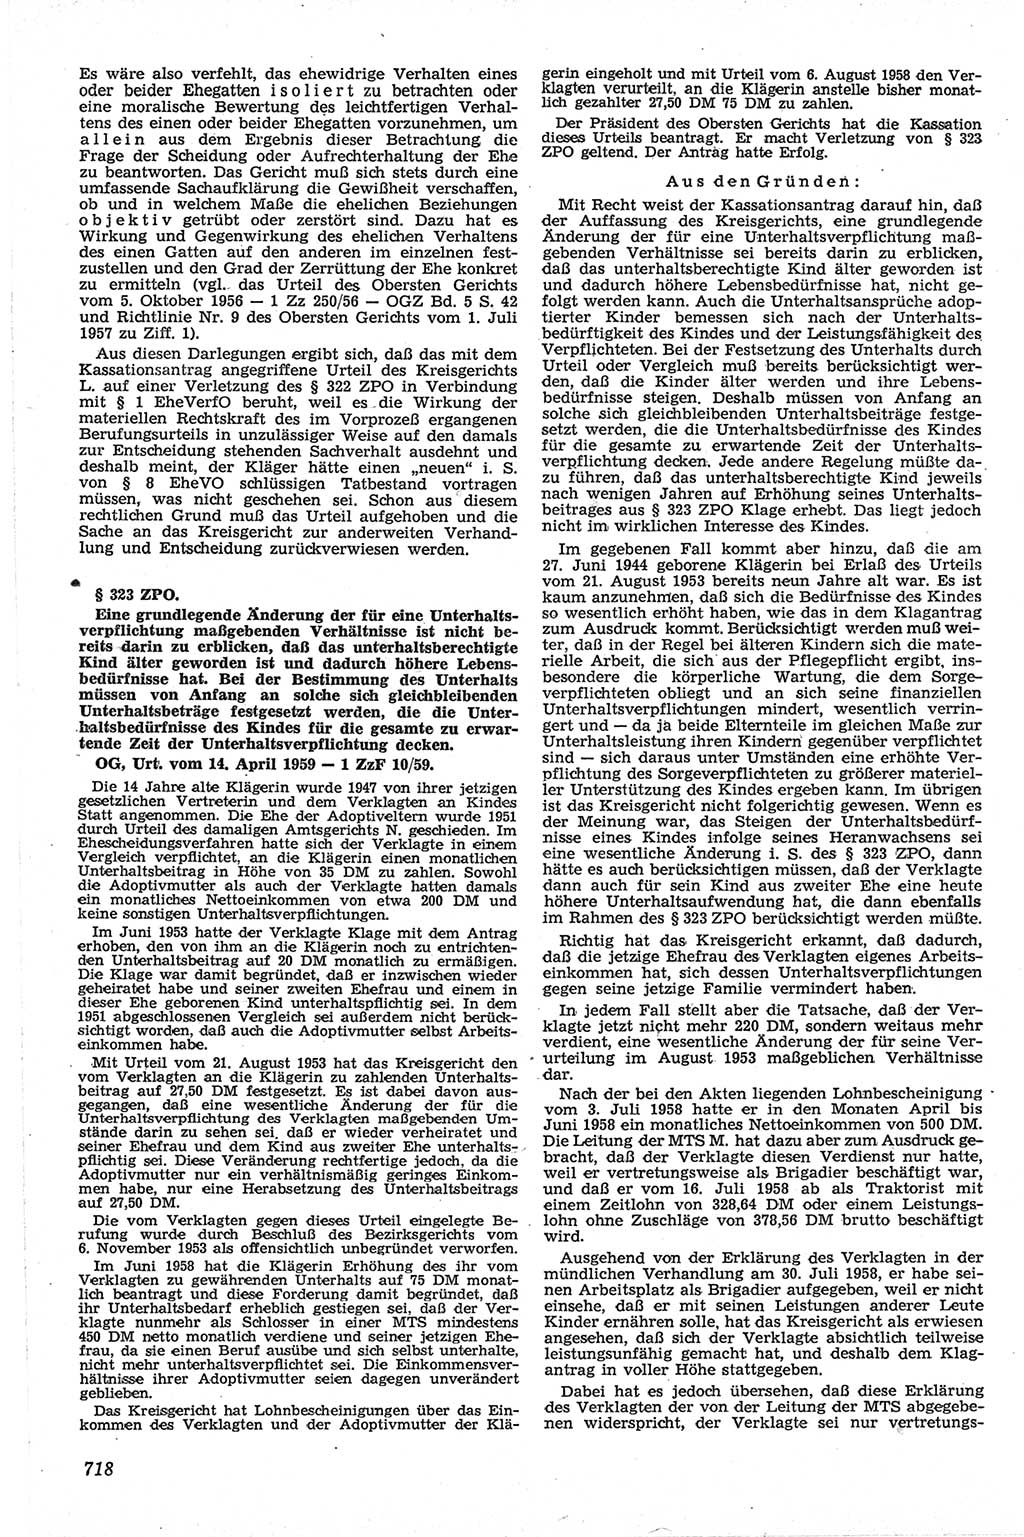 Neue Justiz (NJ), Zeitschrift für Recht und Rechtswissenschaft [Deutsche Demokratische Republik (DDR)], 13. Jahrgang 1959, Seite 718 (NJ DDR 1959, S. 718)